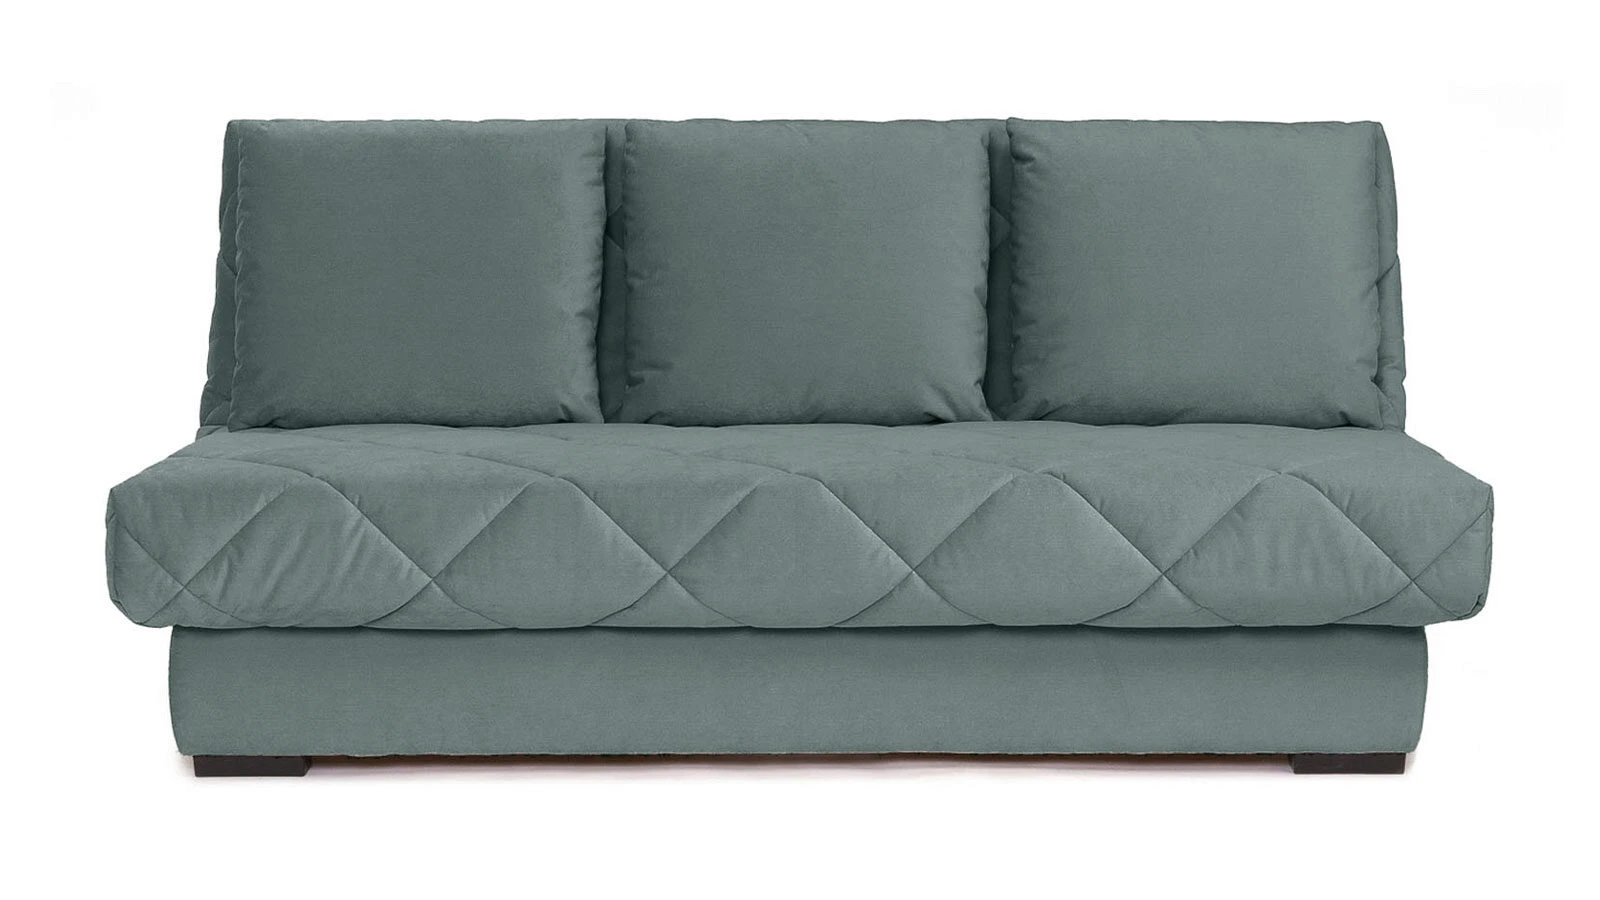 Купить диван с доставкой в Москве - каталог анатомических диван-кроватей соспальным местом от производителя Аскона